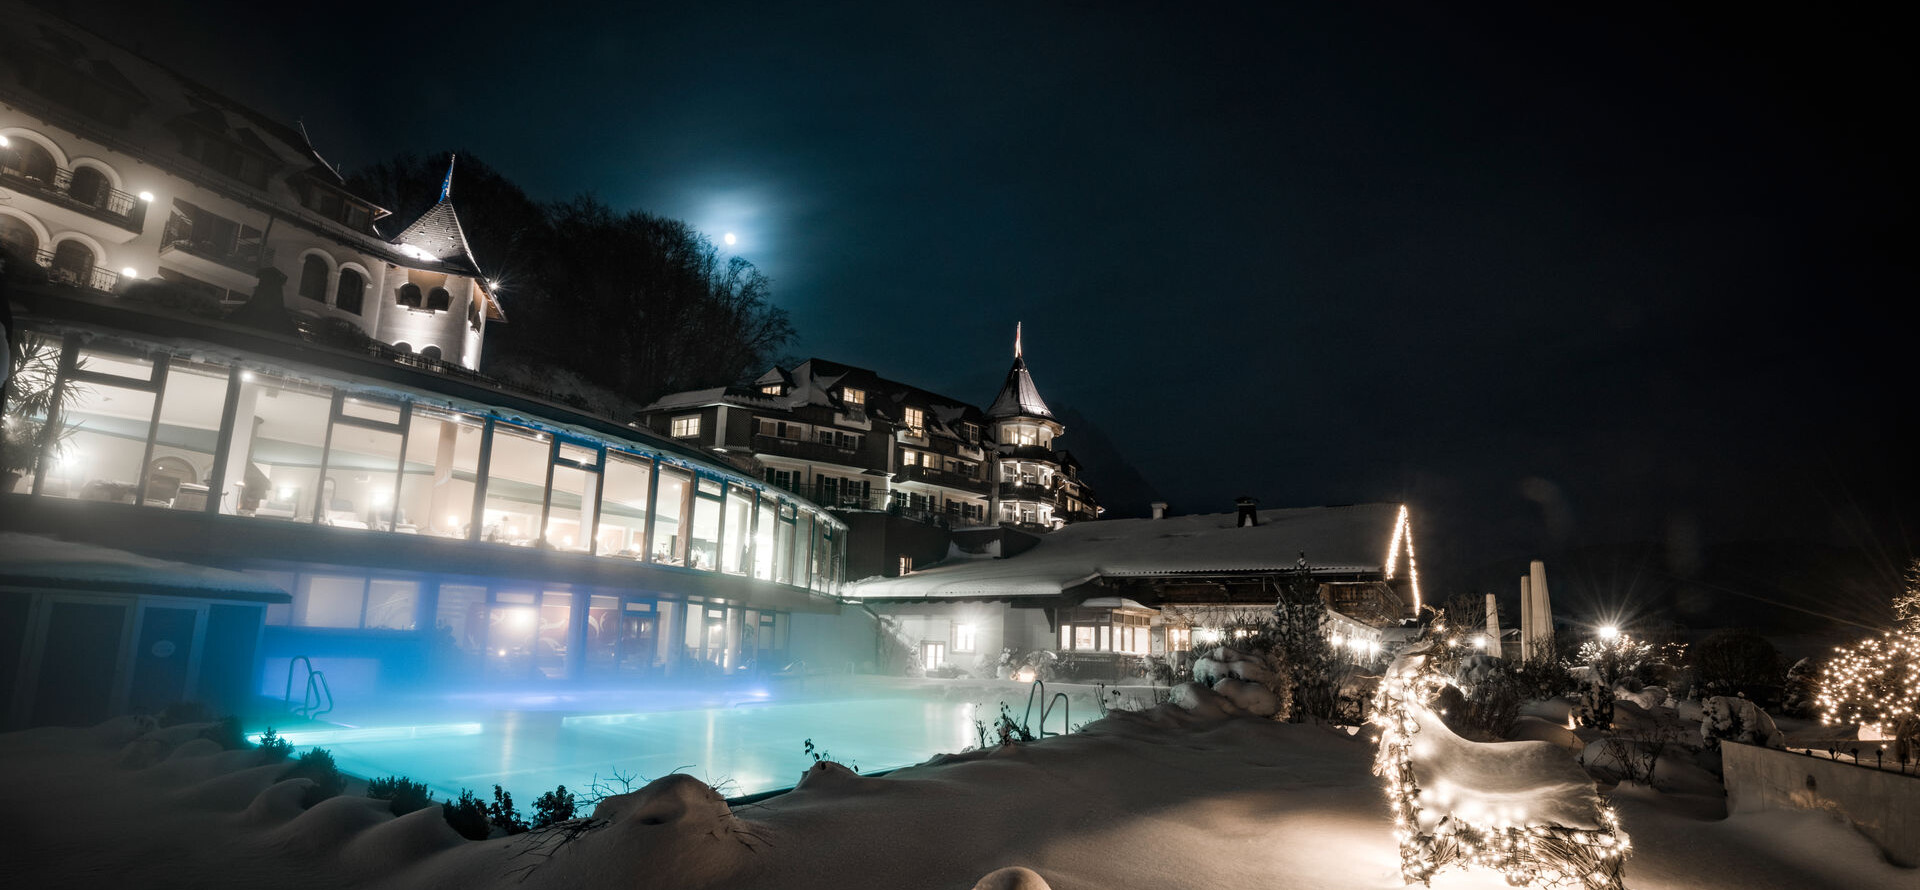 Winter und Wellness in perfekter Kombination: der verschneite Außenpool im Wellnesshotel Ebner's Waldhof am Fuschlsee.